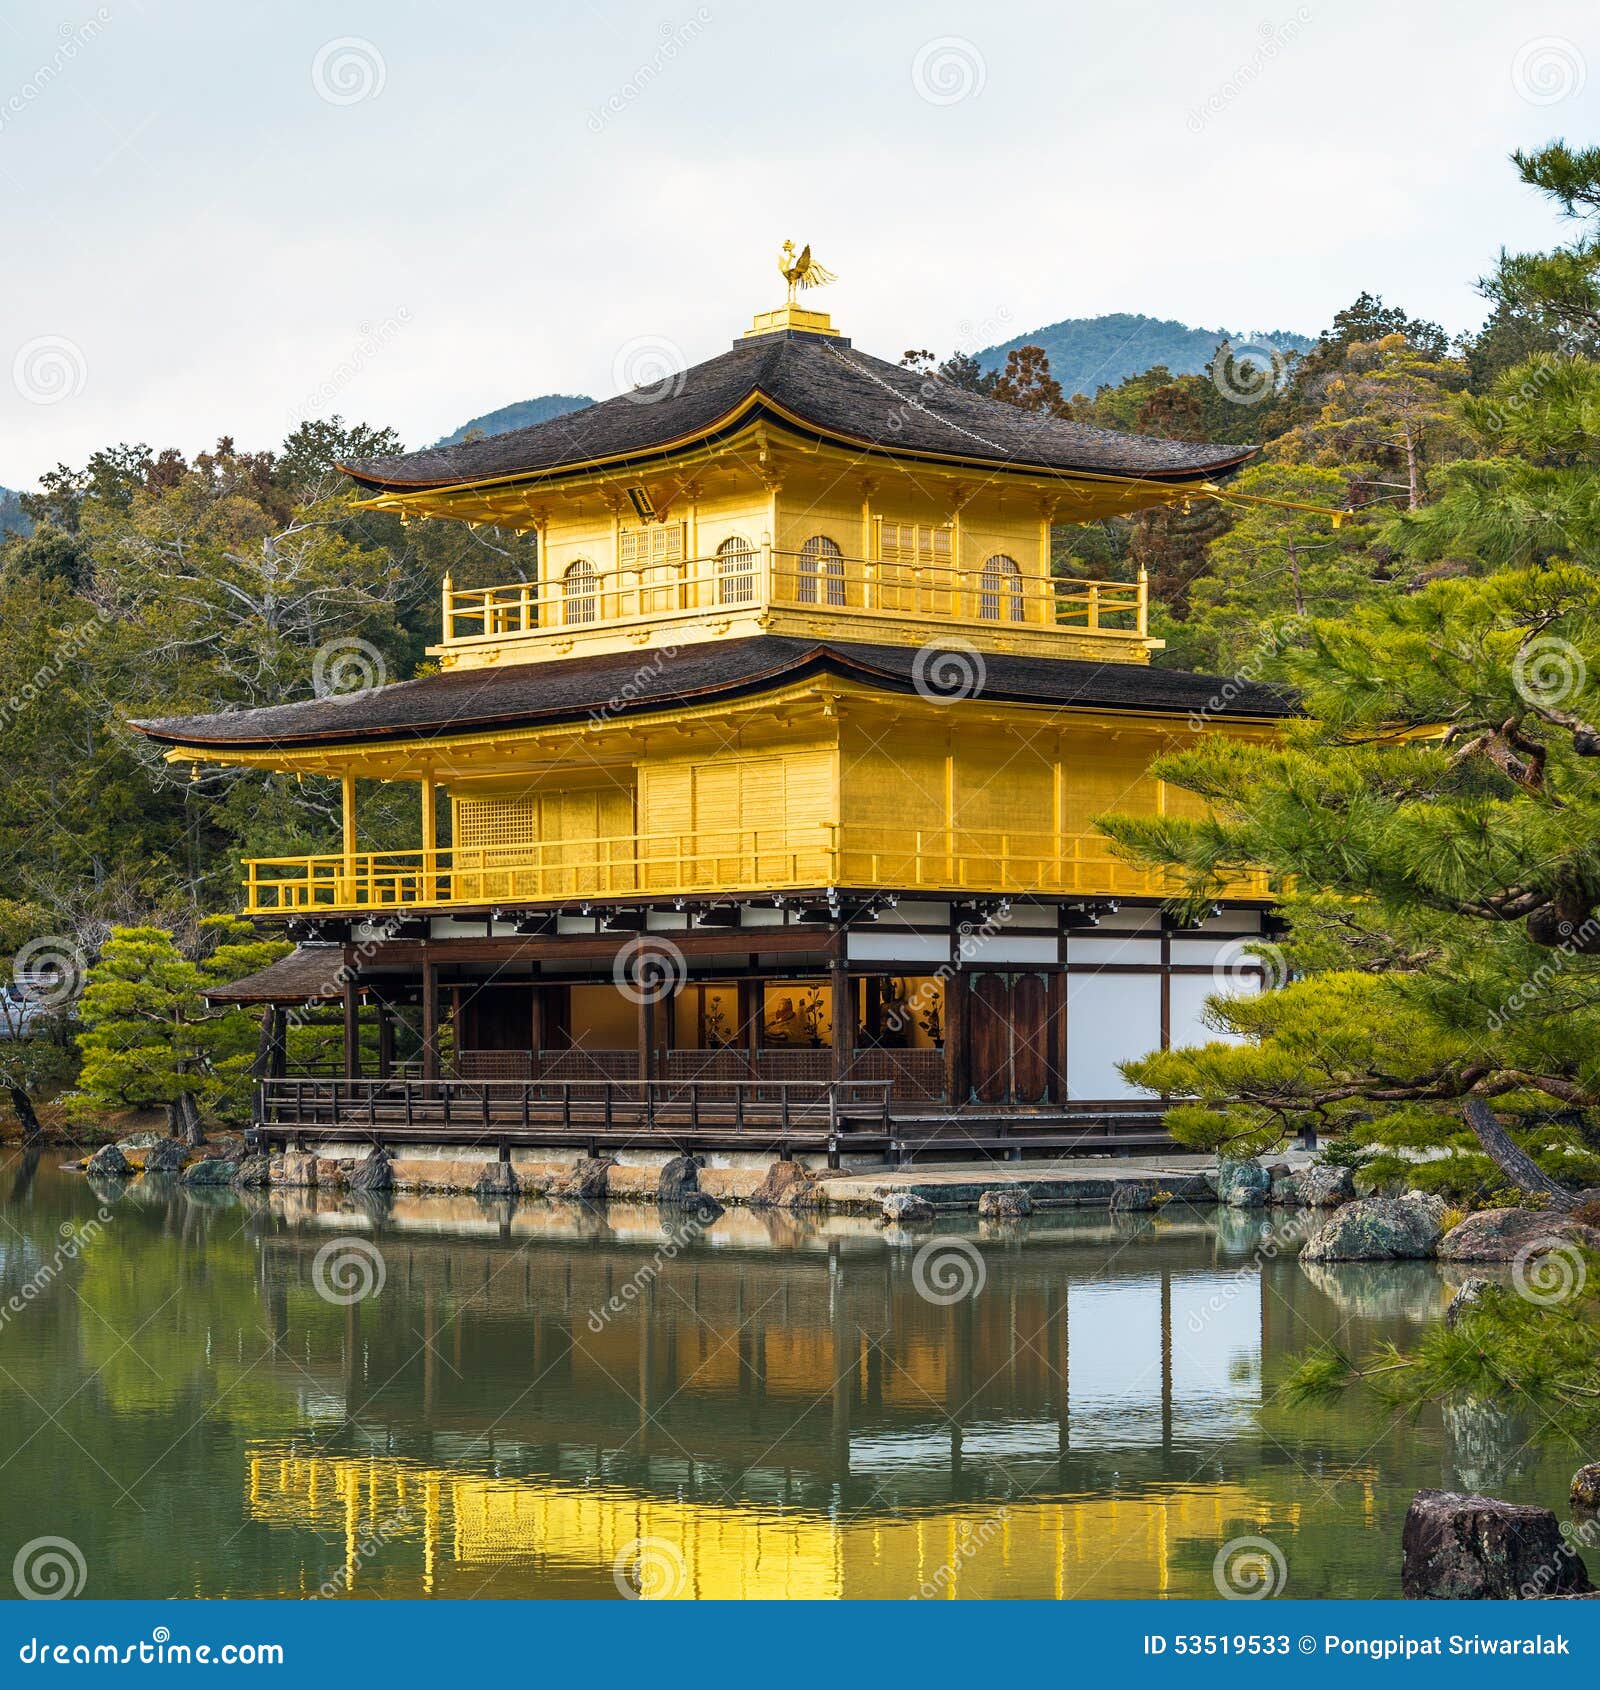 Templo De Kinkakuji O Pavilhao Dourado Em Kyoto Japao Imagem De Stock Imagem De Kyoto Pavilhao